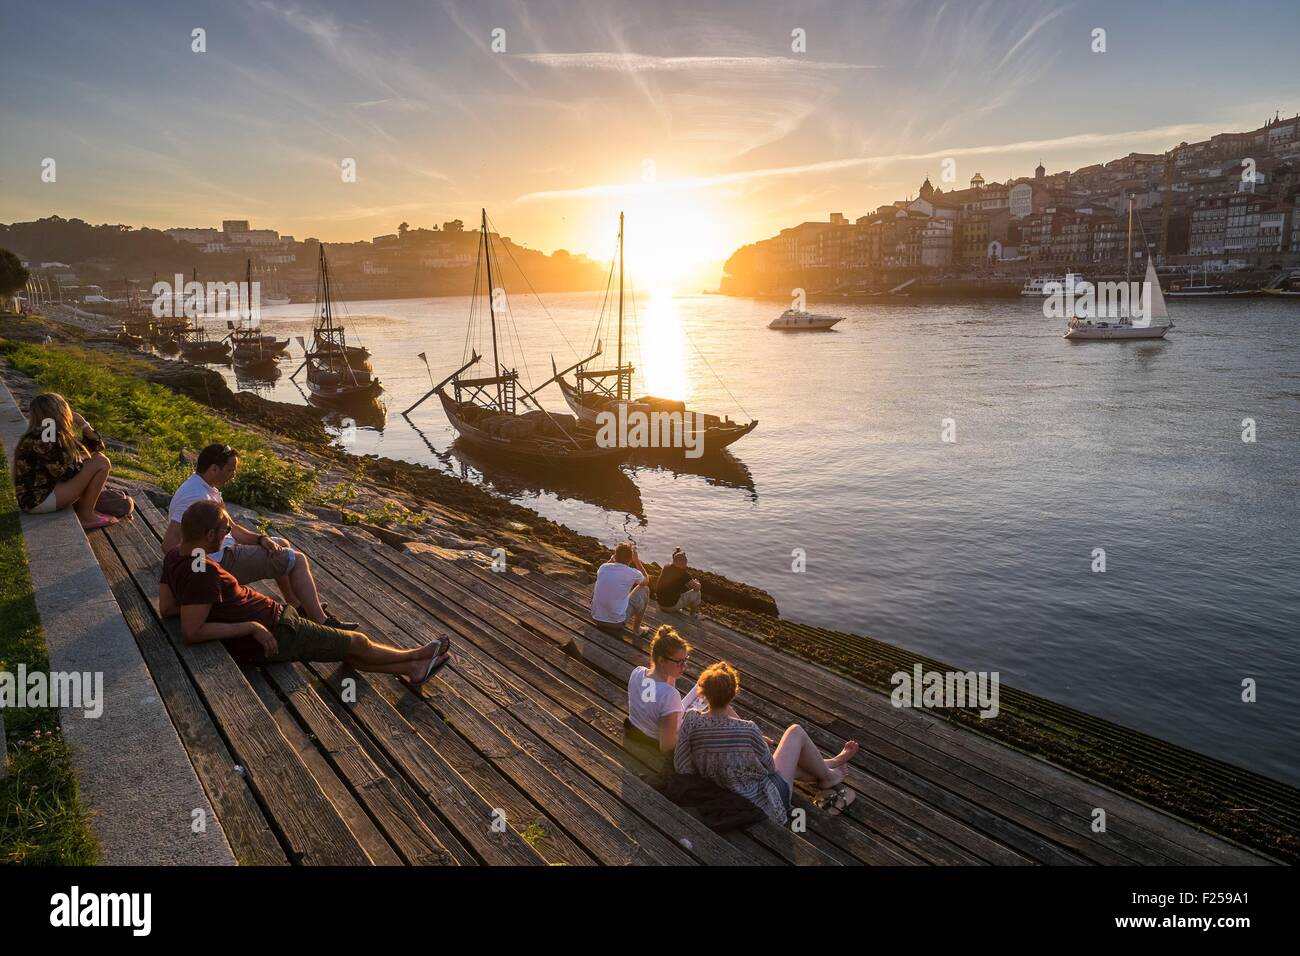 Il Portogallo, regione nord, Vila Nova de Gaia, tramonto sul fiume Douro, il centro storico di Porto è classificato come patrimonio mondiale dall' UNESCO, in background Foto Stock